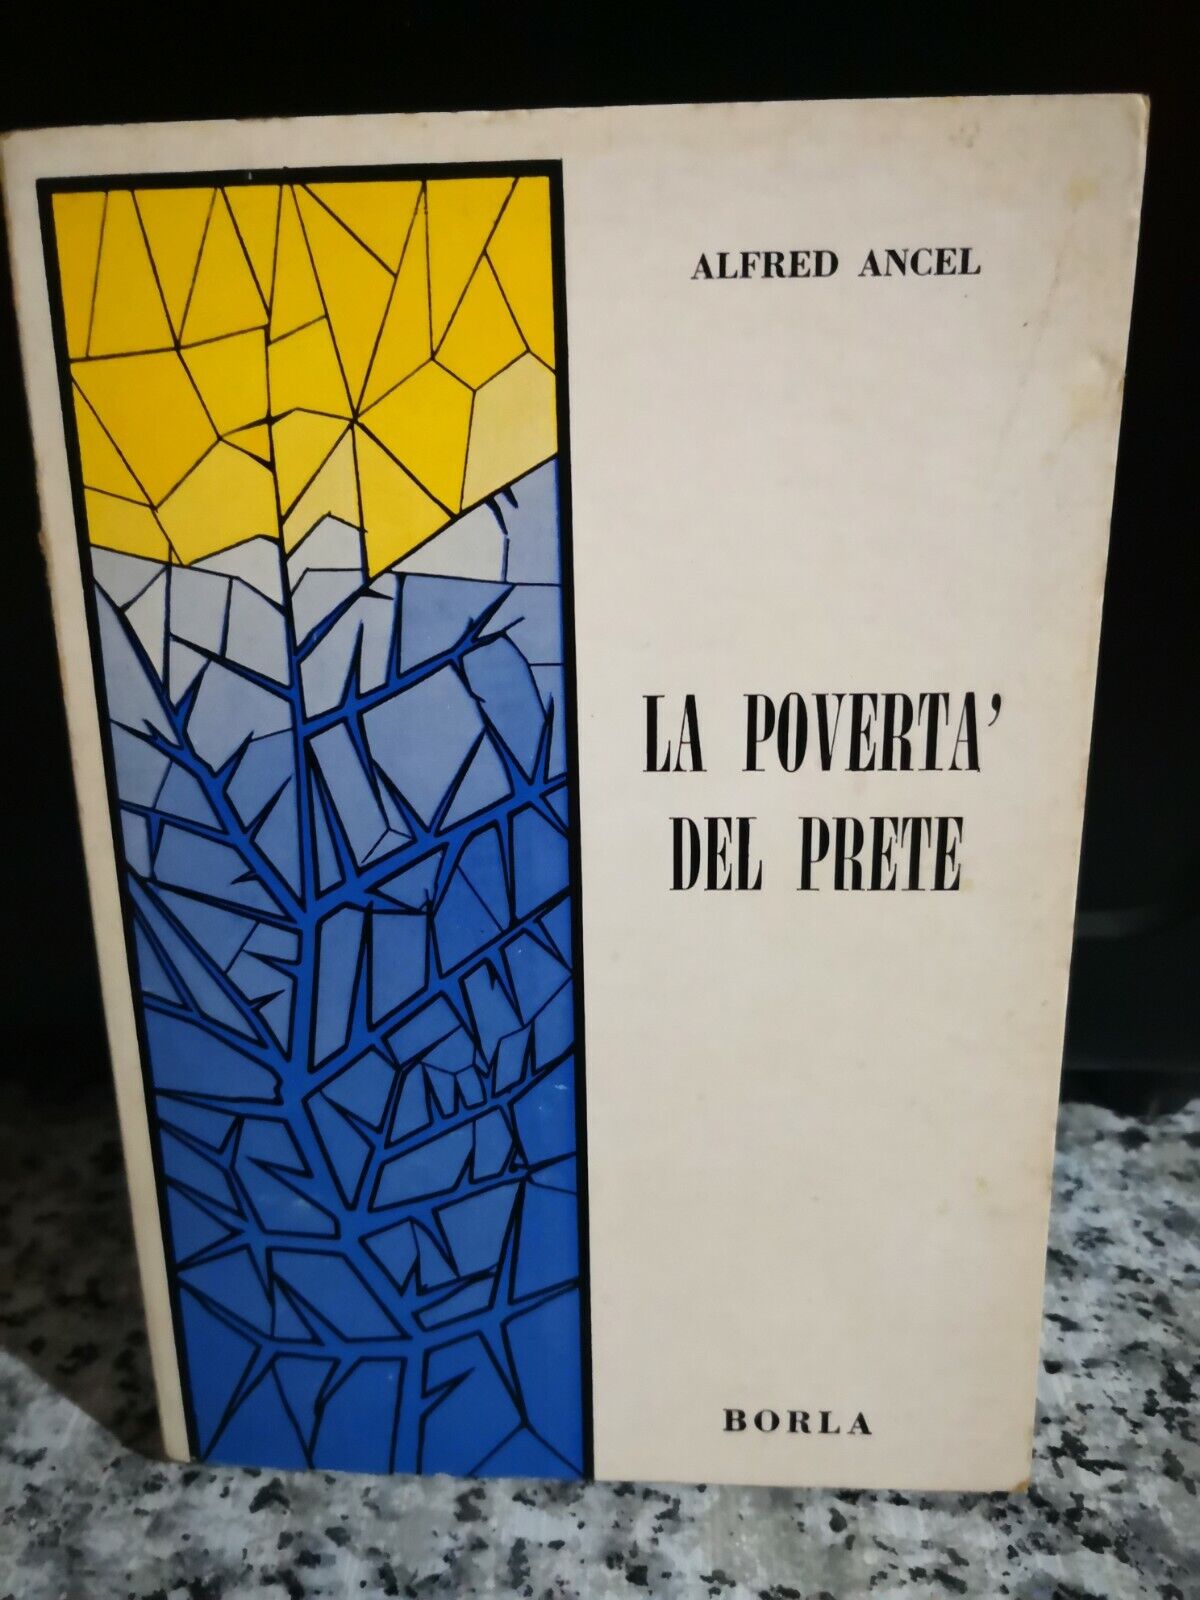  La povert? del prete di Alfred Ancel,  1965,  Borla -F